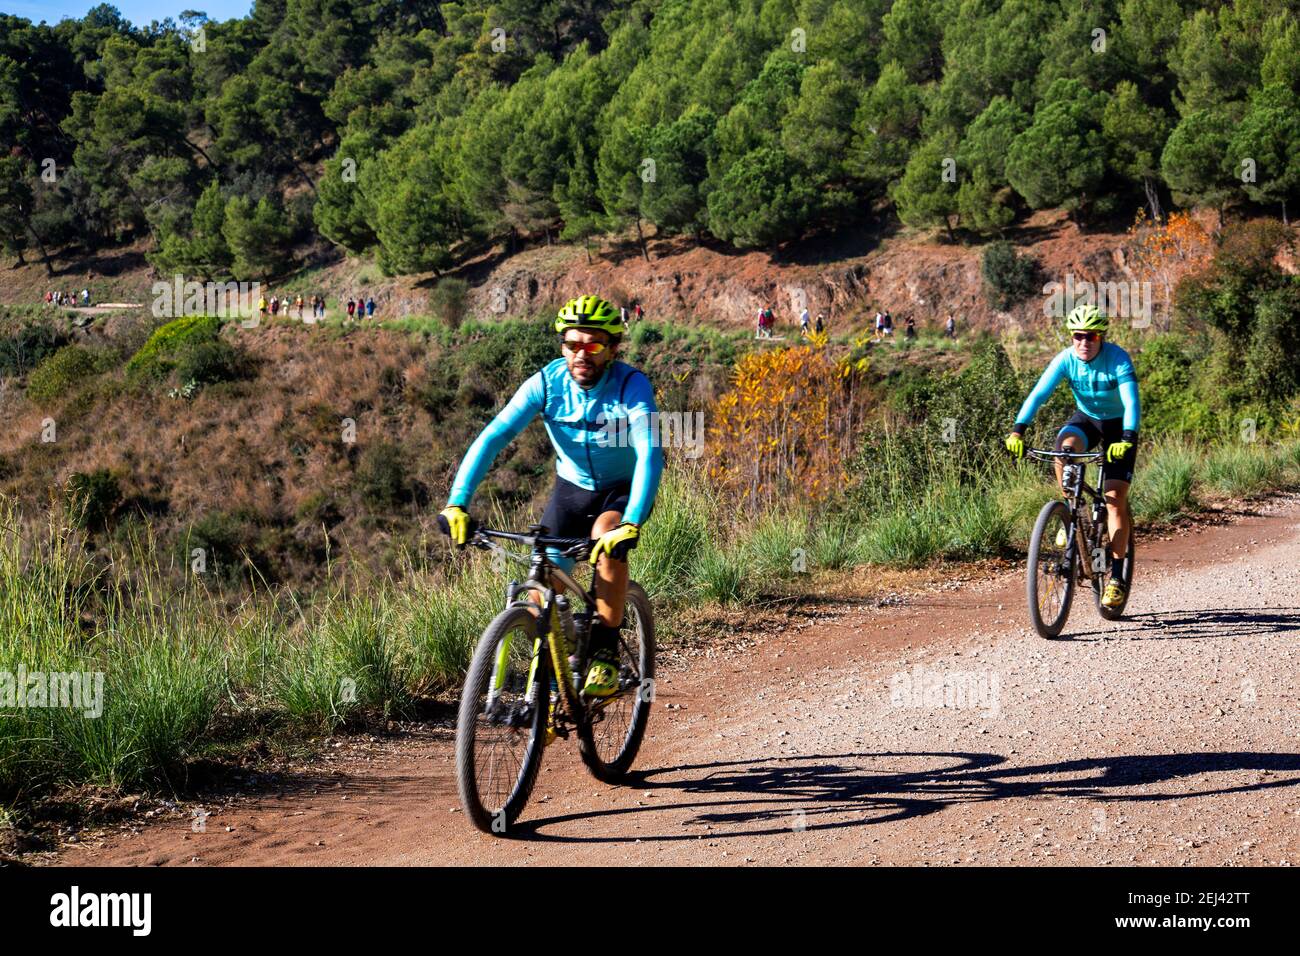 Durante los fin de semana la carretera de las aigues se llena de deportistas como corredores y ciclistas. Stock Photo